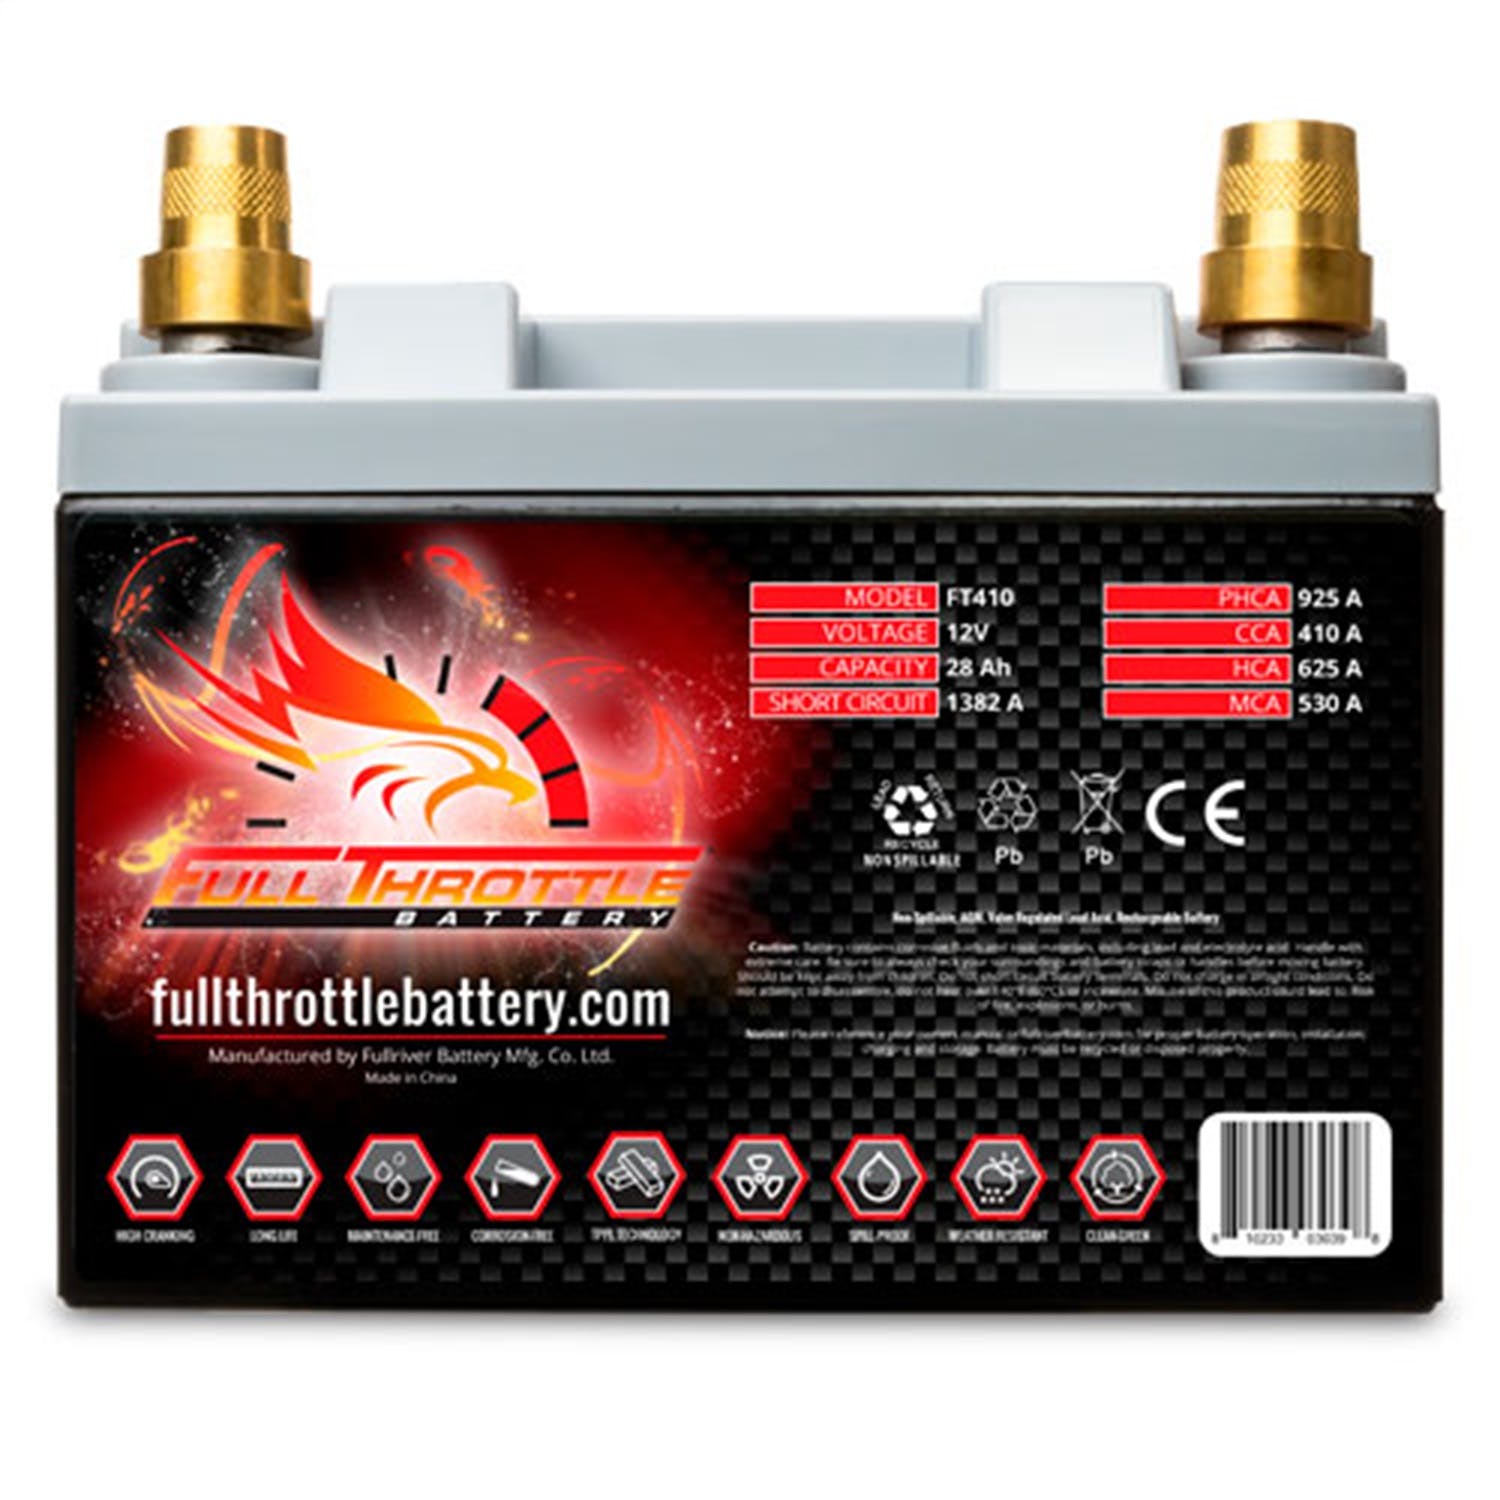 Fullriver Battery FT410 Full Throttle 12V Power Sports Battery